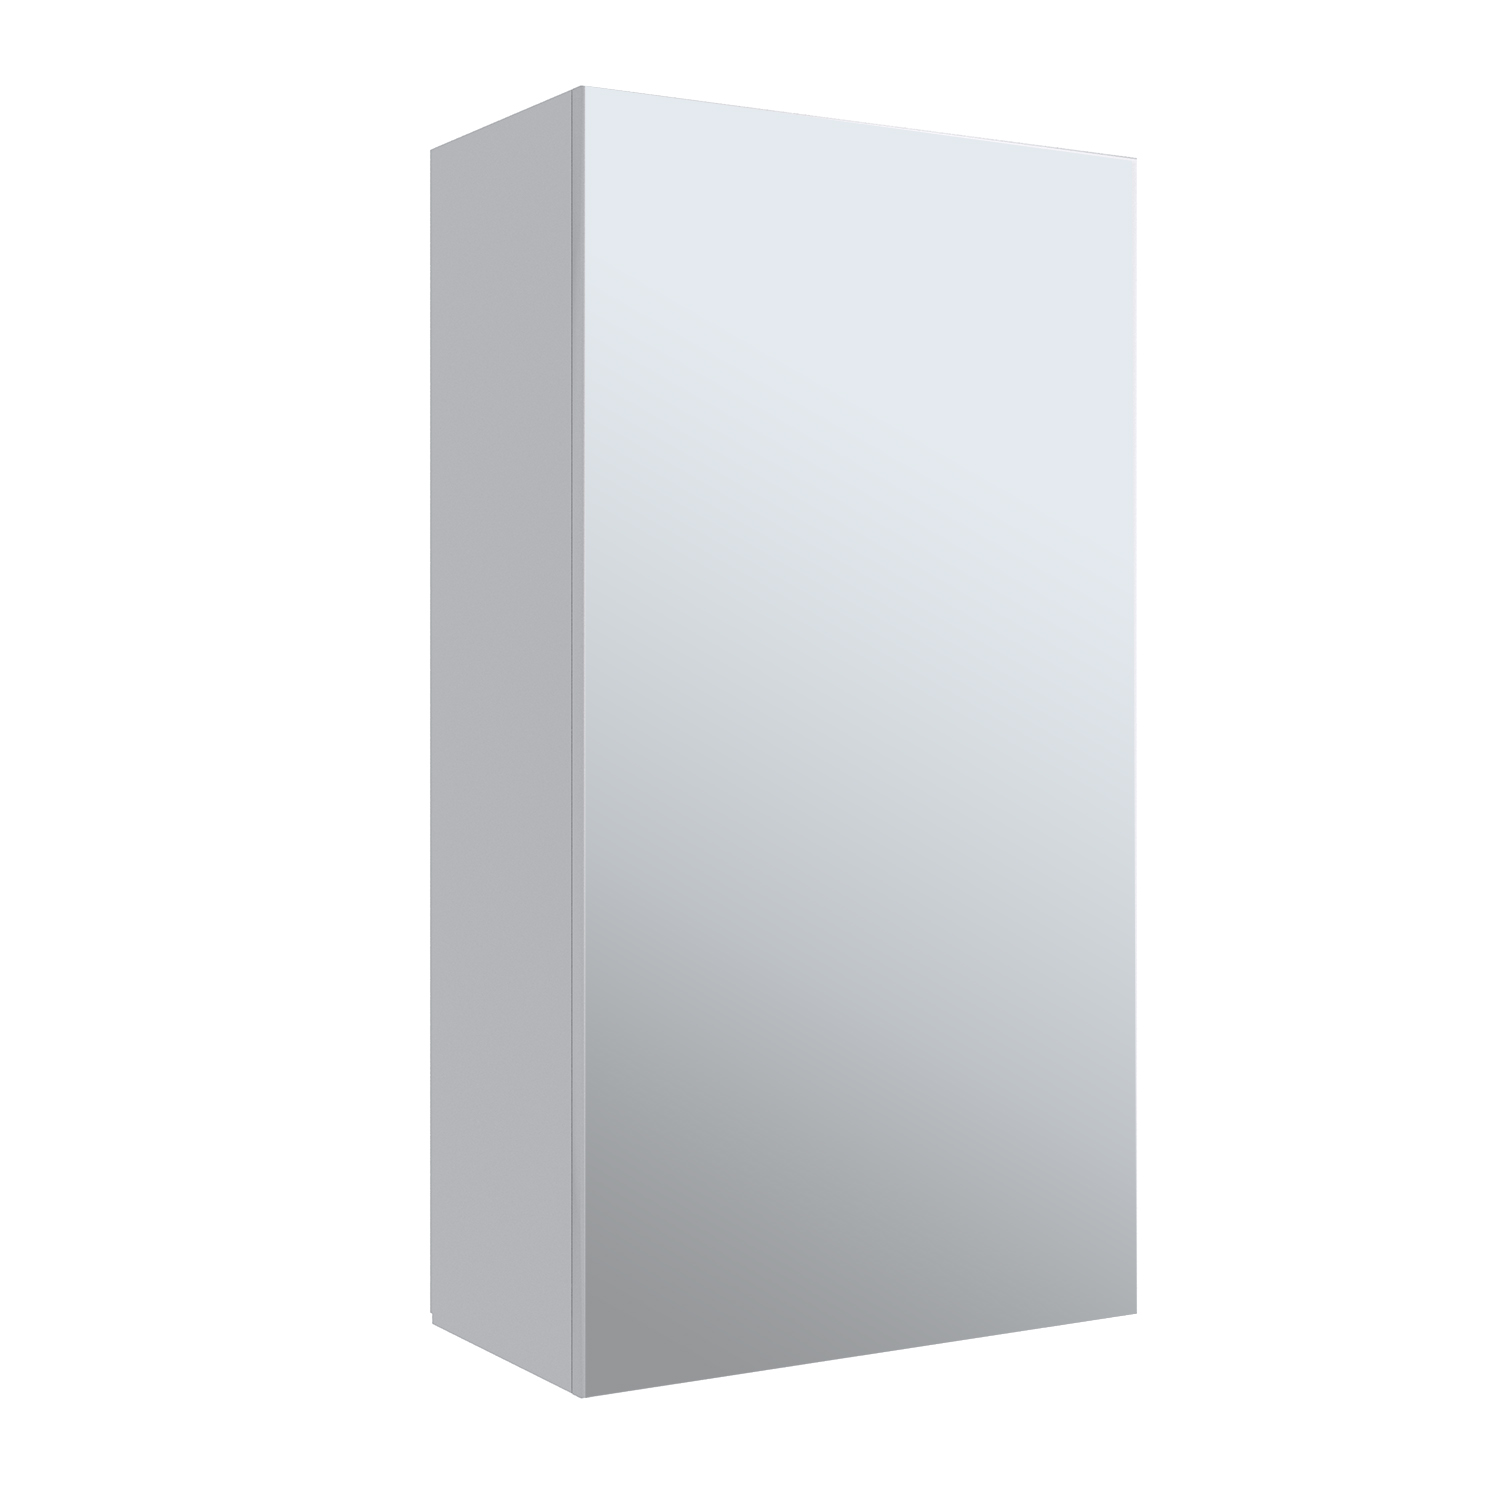 Зеркало-шкаф Runo Кредо 40 белый зеркальный шкаф onika кредо 35 угловой универсальный